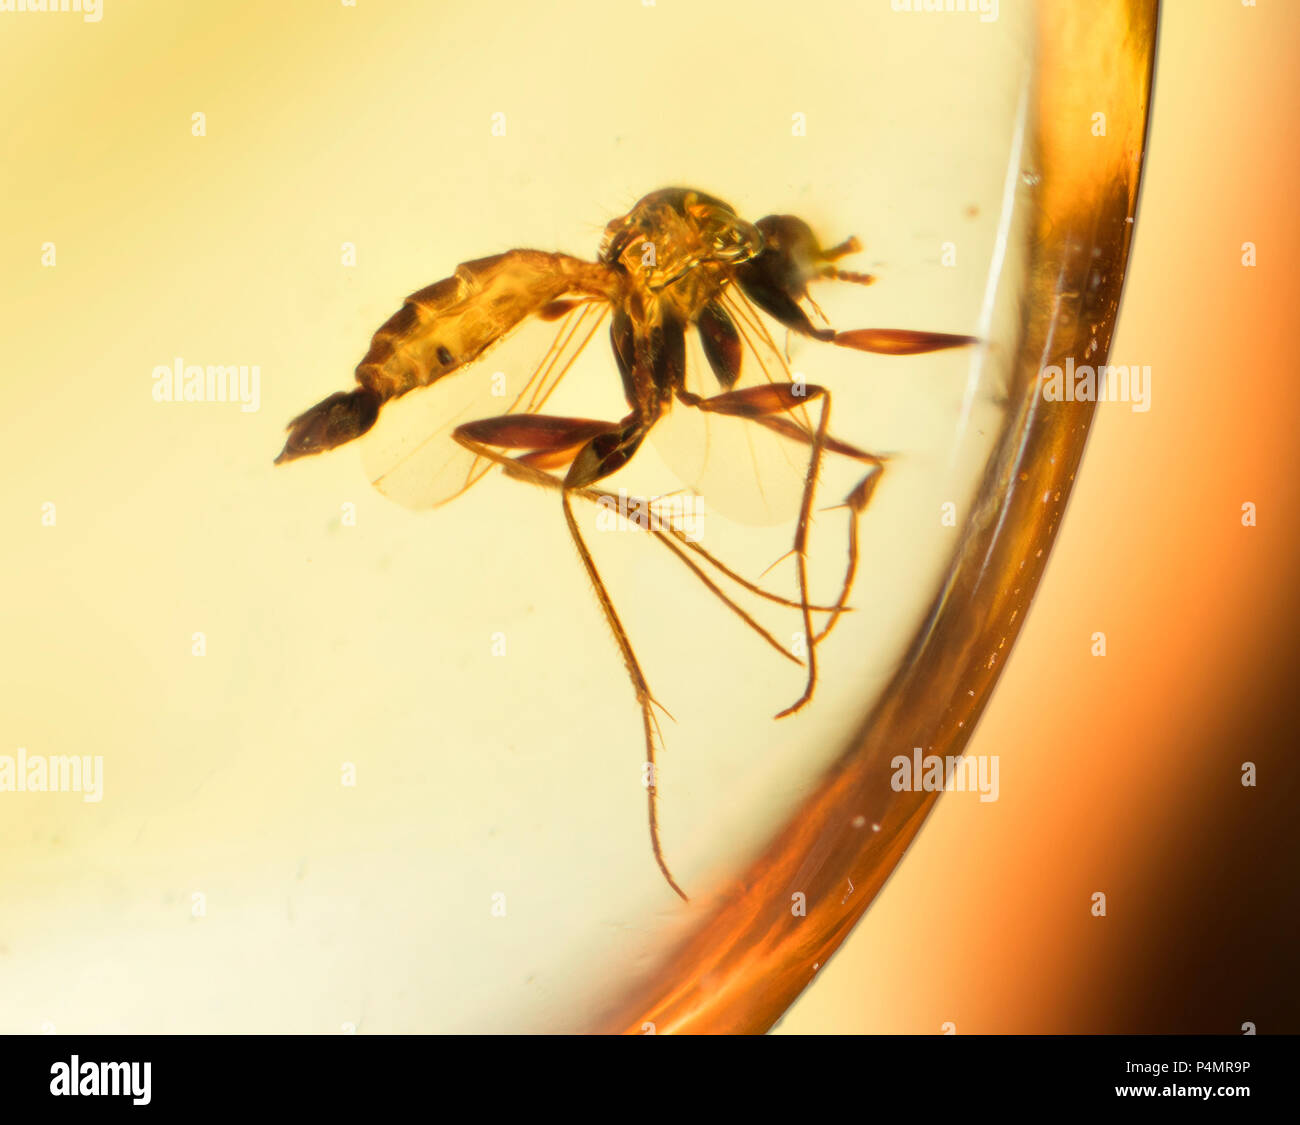 Volar los insectos atrapados en ámbar birmano Foto de stock